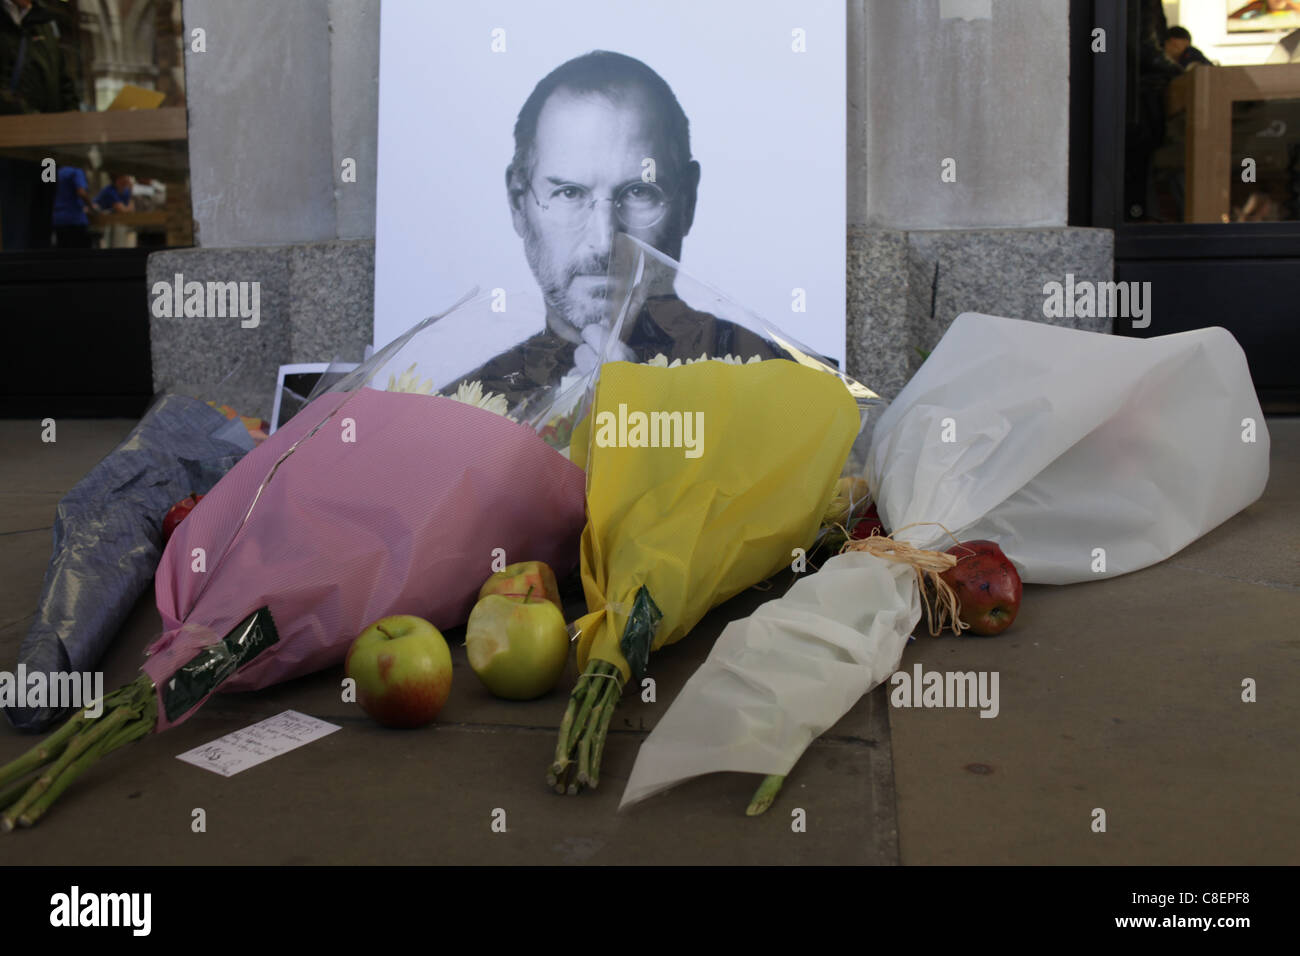 Steve Jobs memorial outside Apple's Covent Garden store in London. Stock Photo